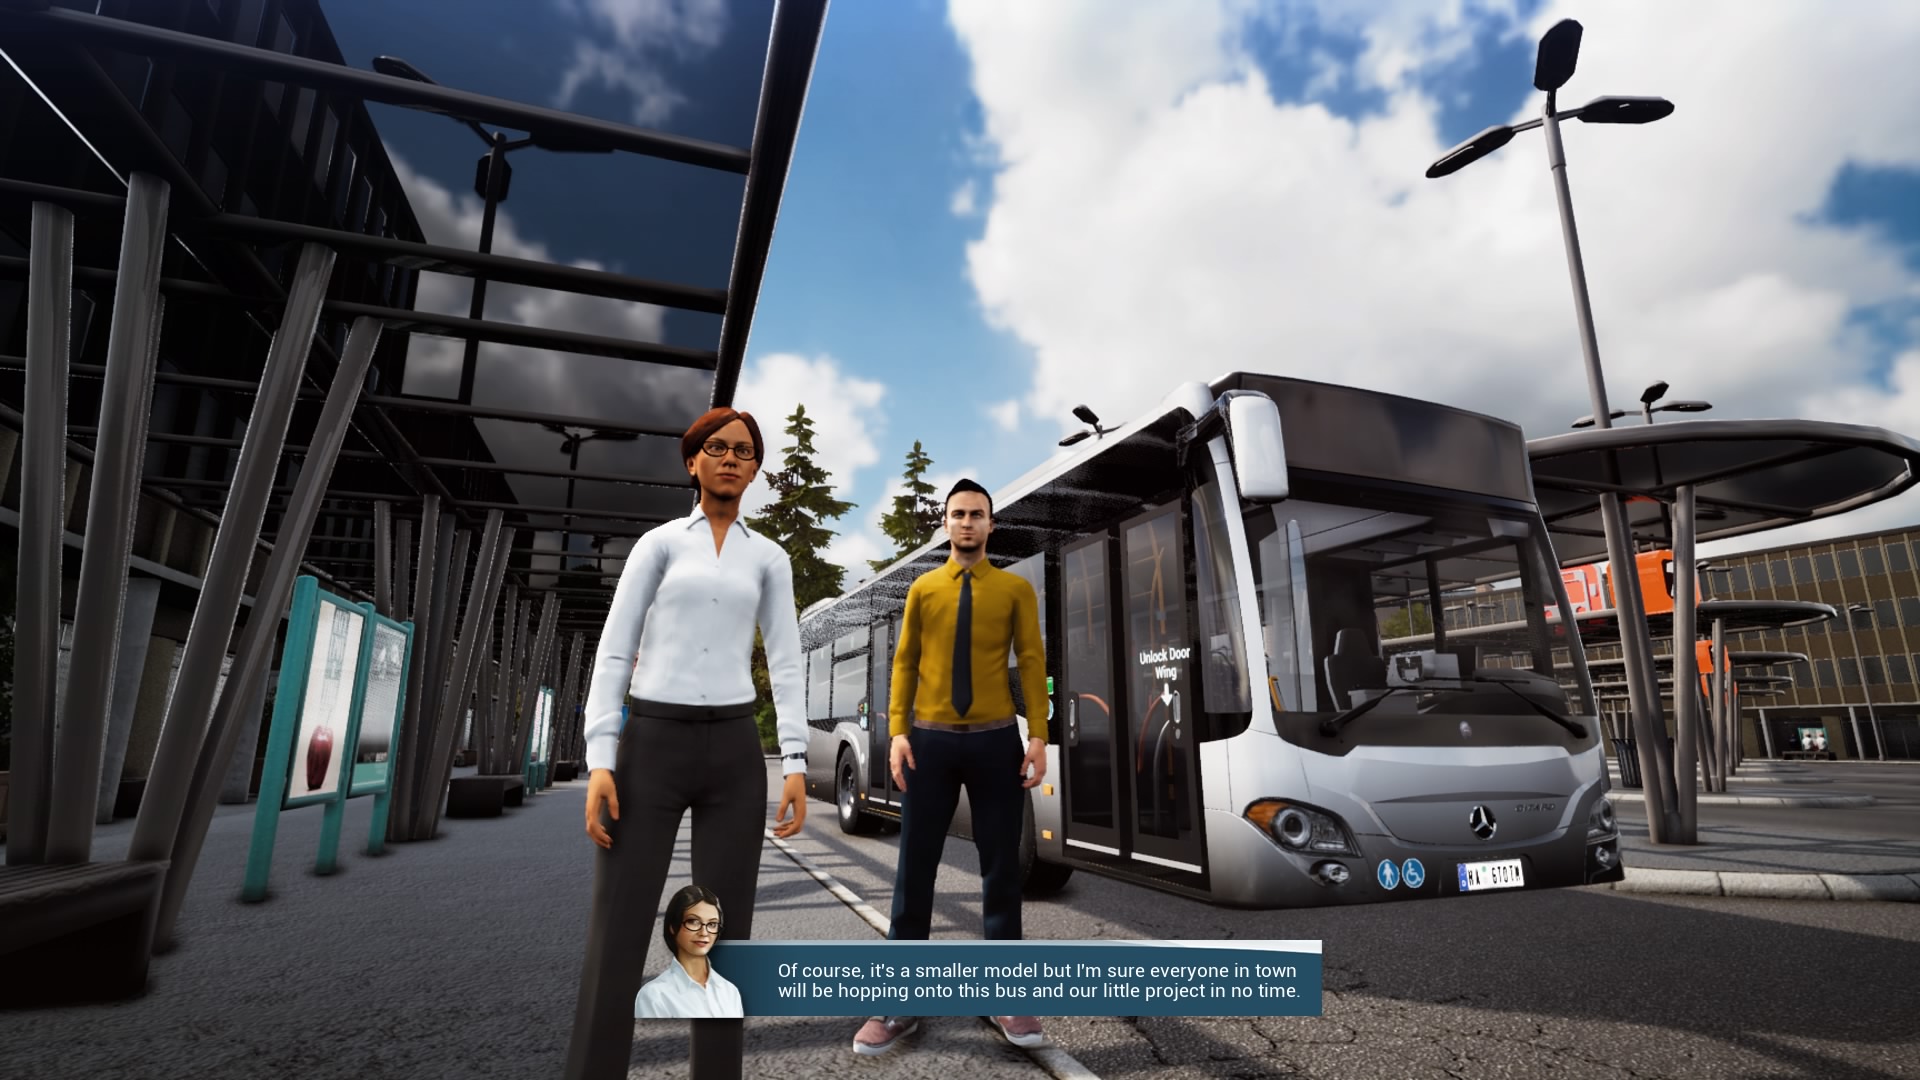 Bus Simulator 18 Editor  Baixe e jogue de graça - Epic Games Store